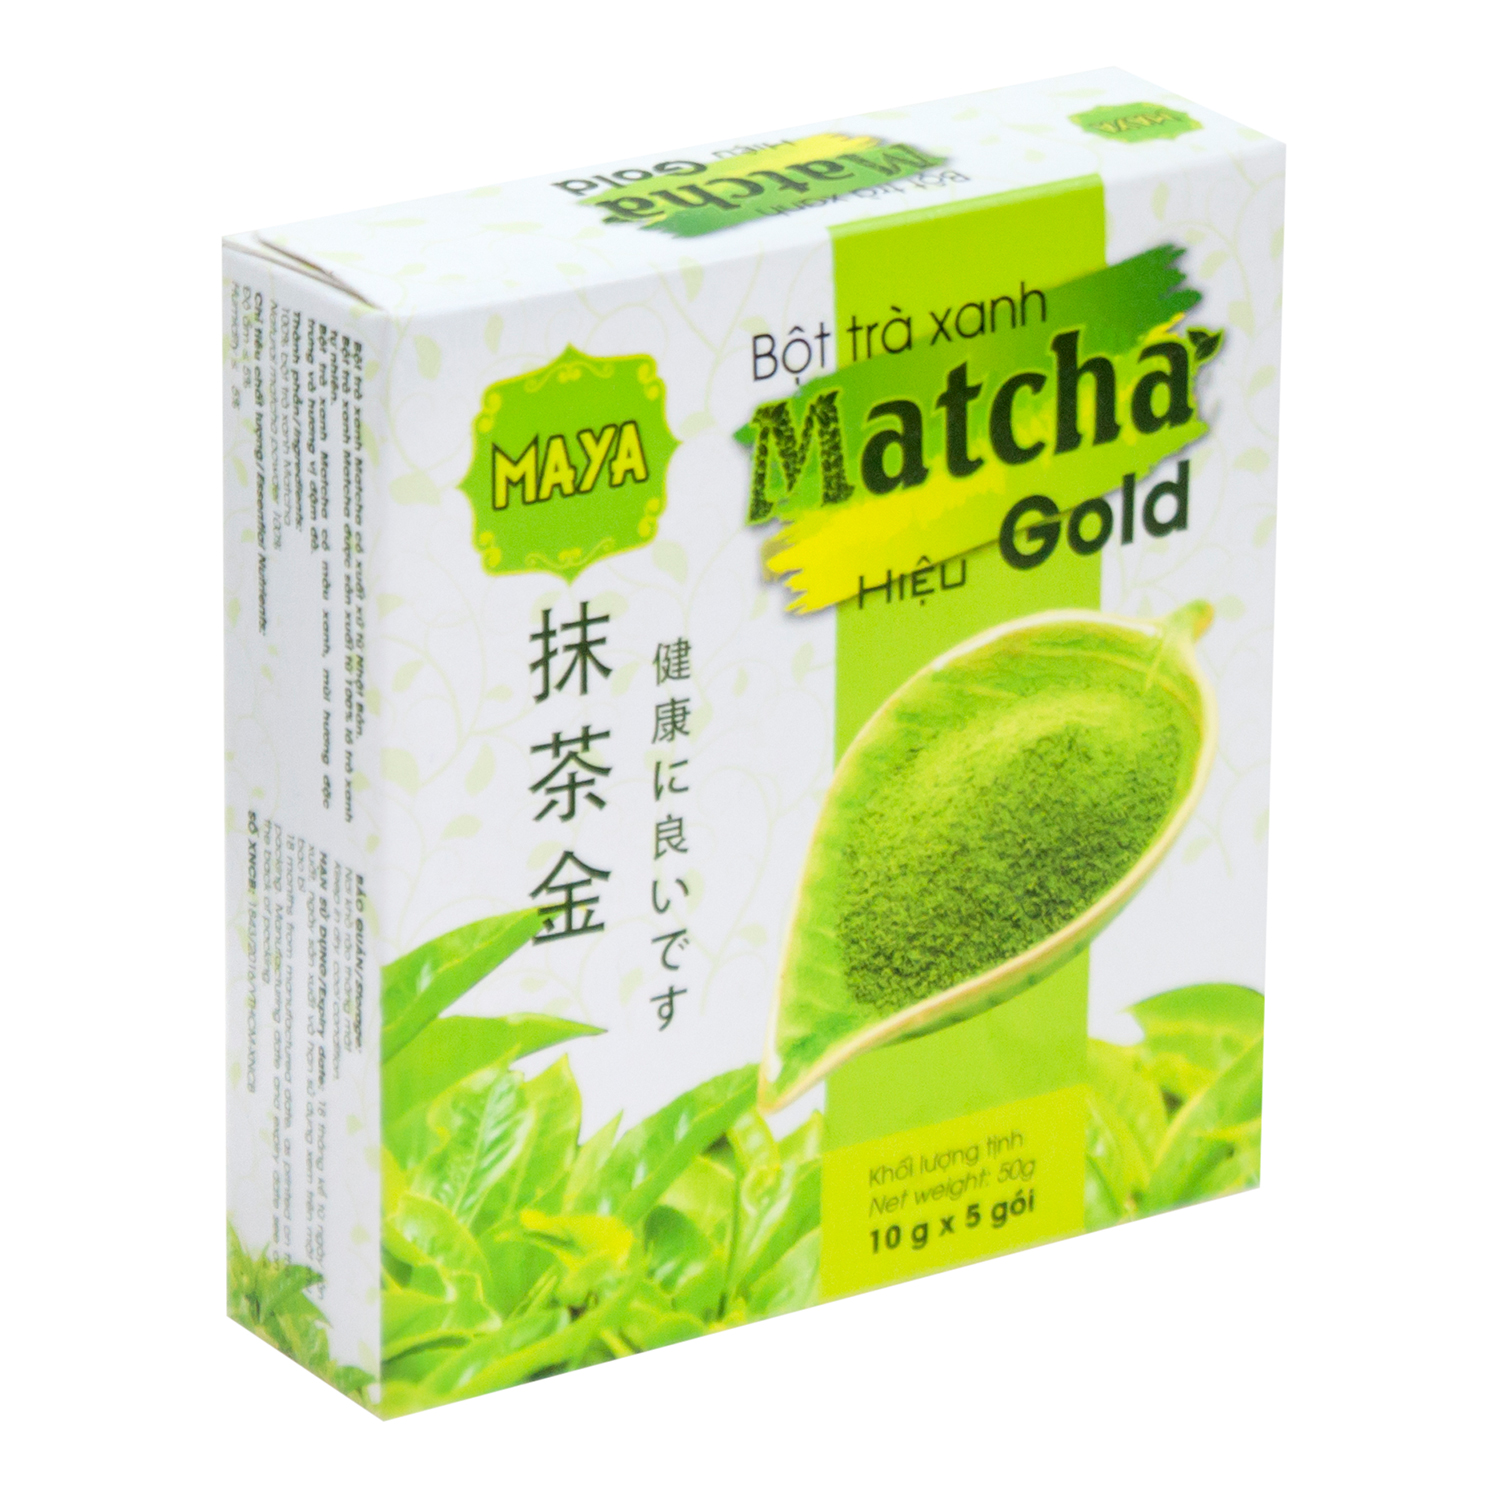 Bột Trà Xanh Matcha Hiệu Gold Cocoa Indochine (Hộp 5 Gói x 10g)